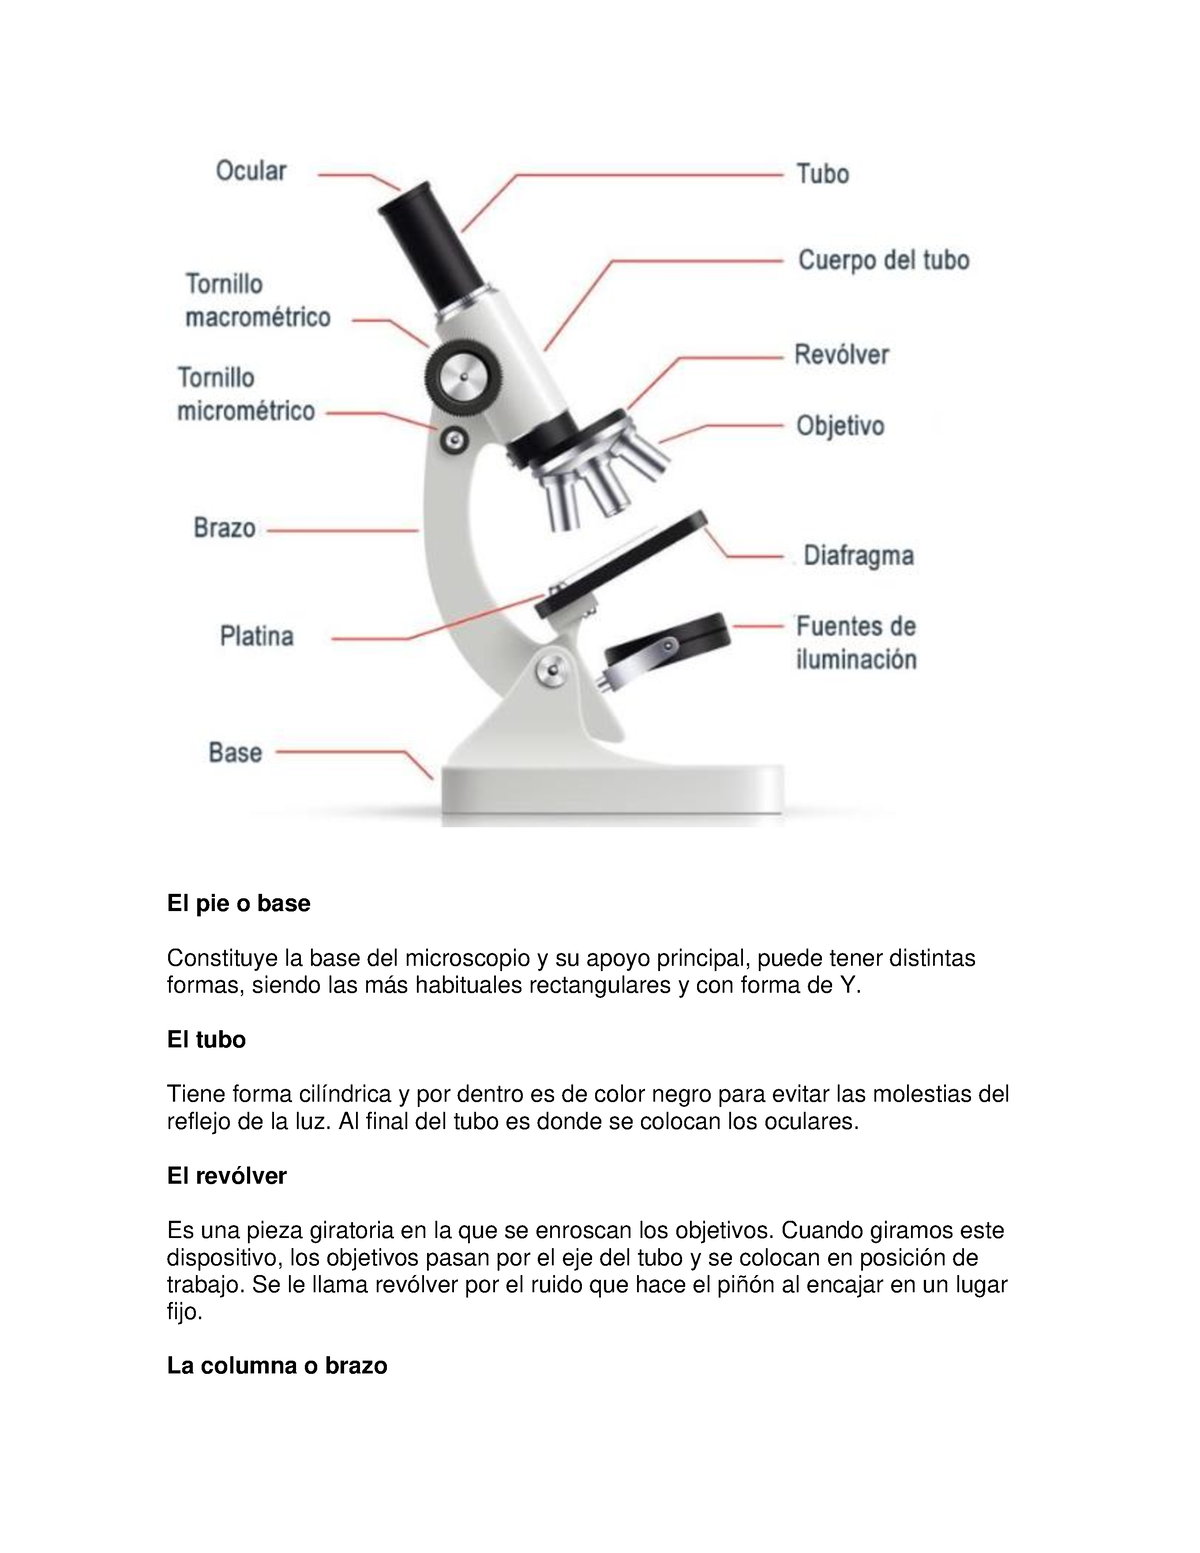 Revolucionario capacidad Cambio Partes del microscopio - El pie o base Constituye la base del microscopio y  su apoyo principal, - Studocu